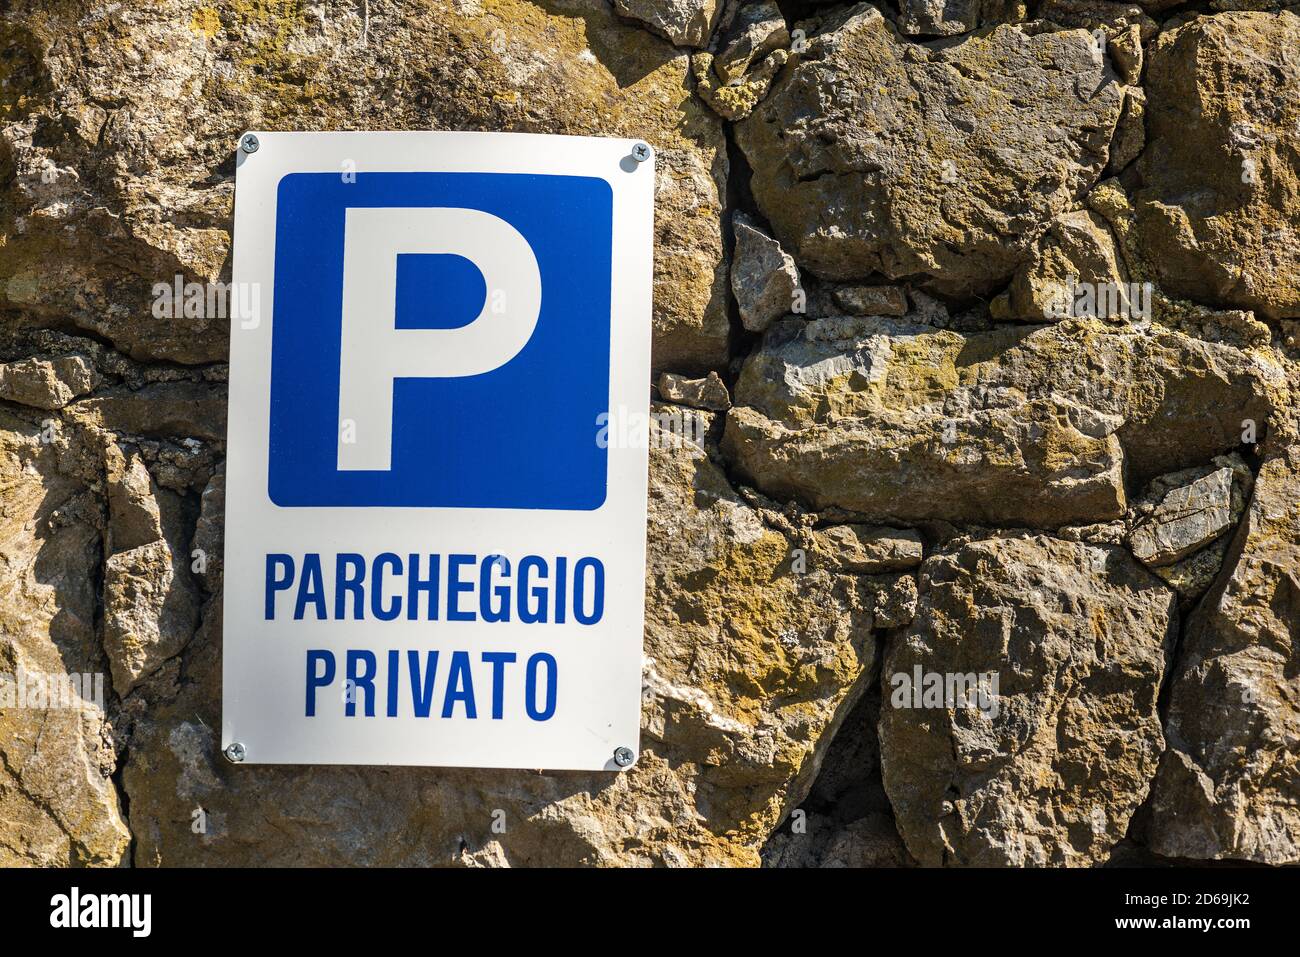 Parcheggio privato in lingua italiana, blu e bianco, appeso su un muro di  pietra. Liguria, Italia, Europa Foto stock - Alamy